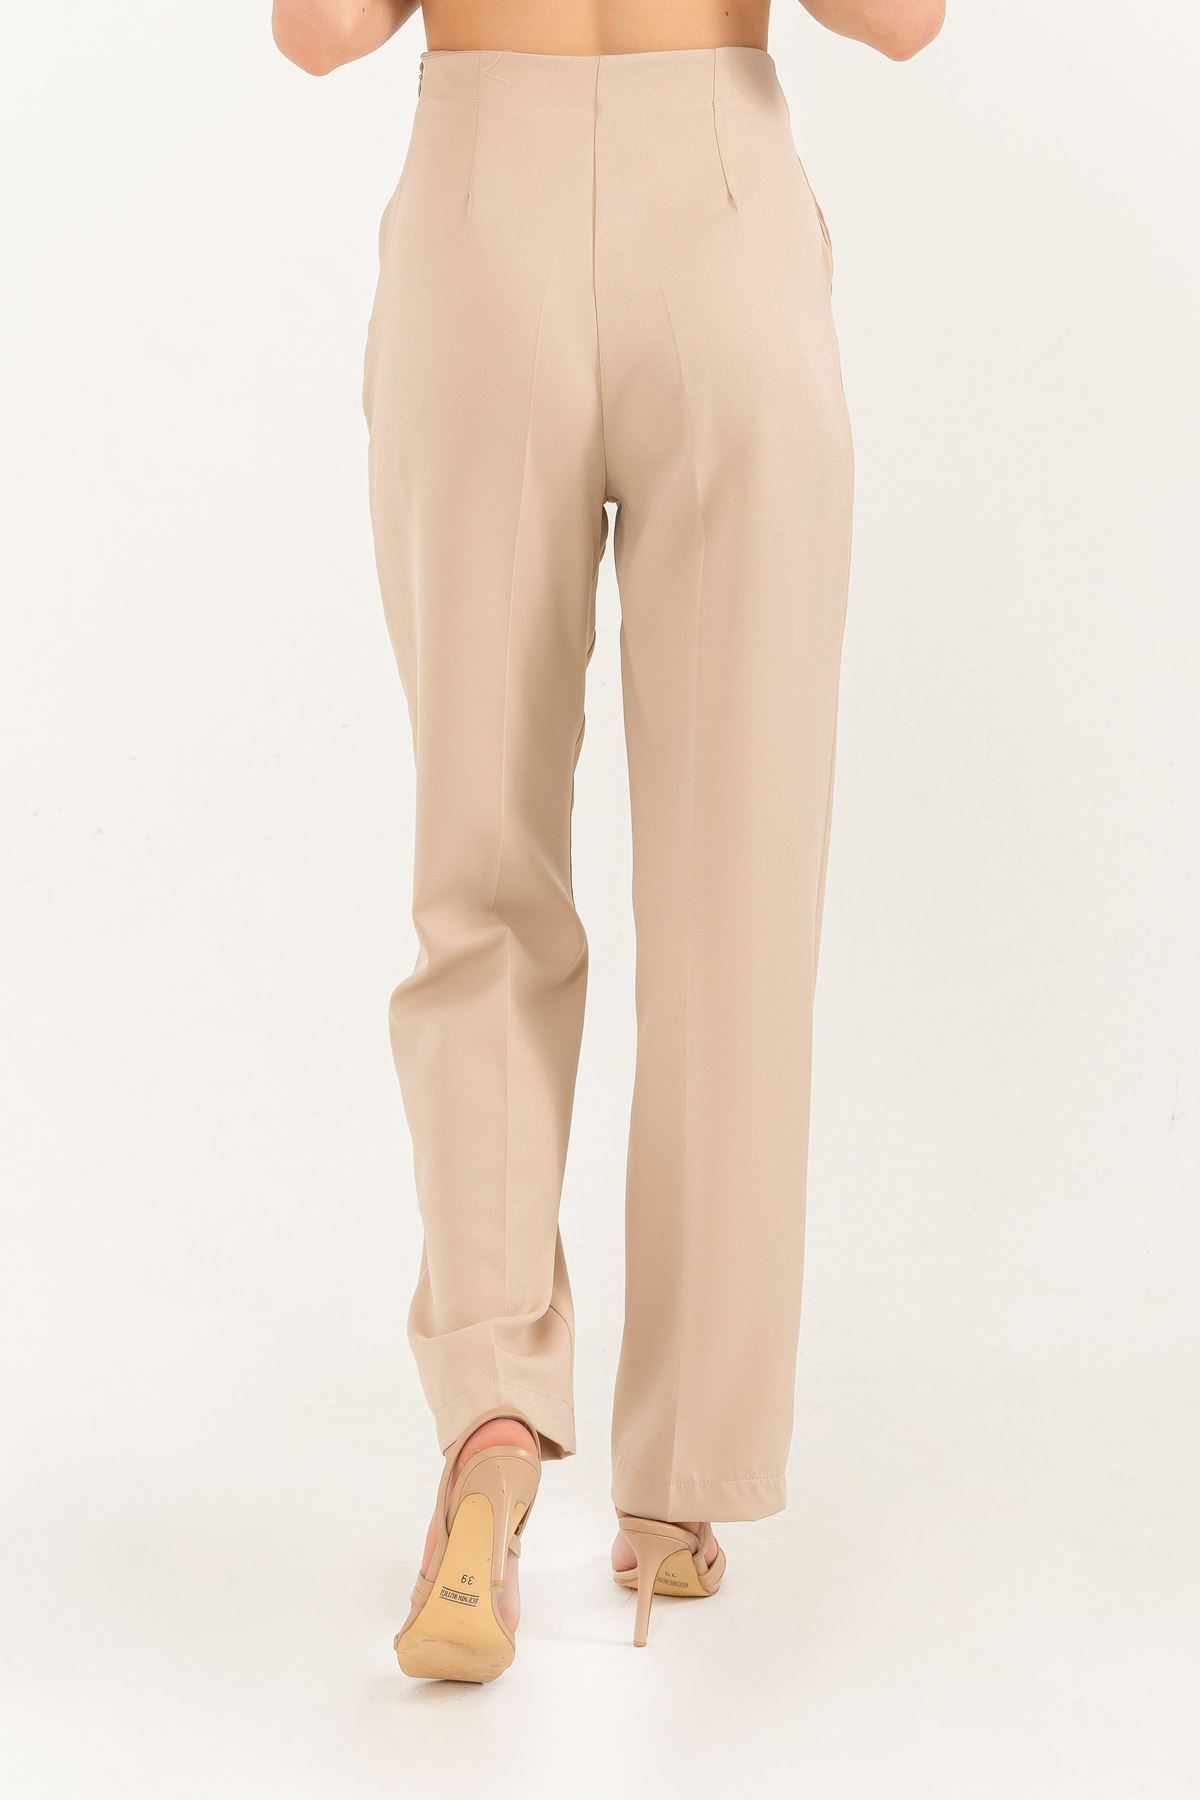 Atlas Kumaş Uzun Boy Bel Detaylı Klasik Kadın Pantolon-Bej